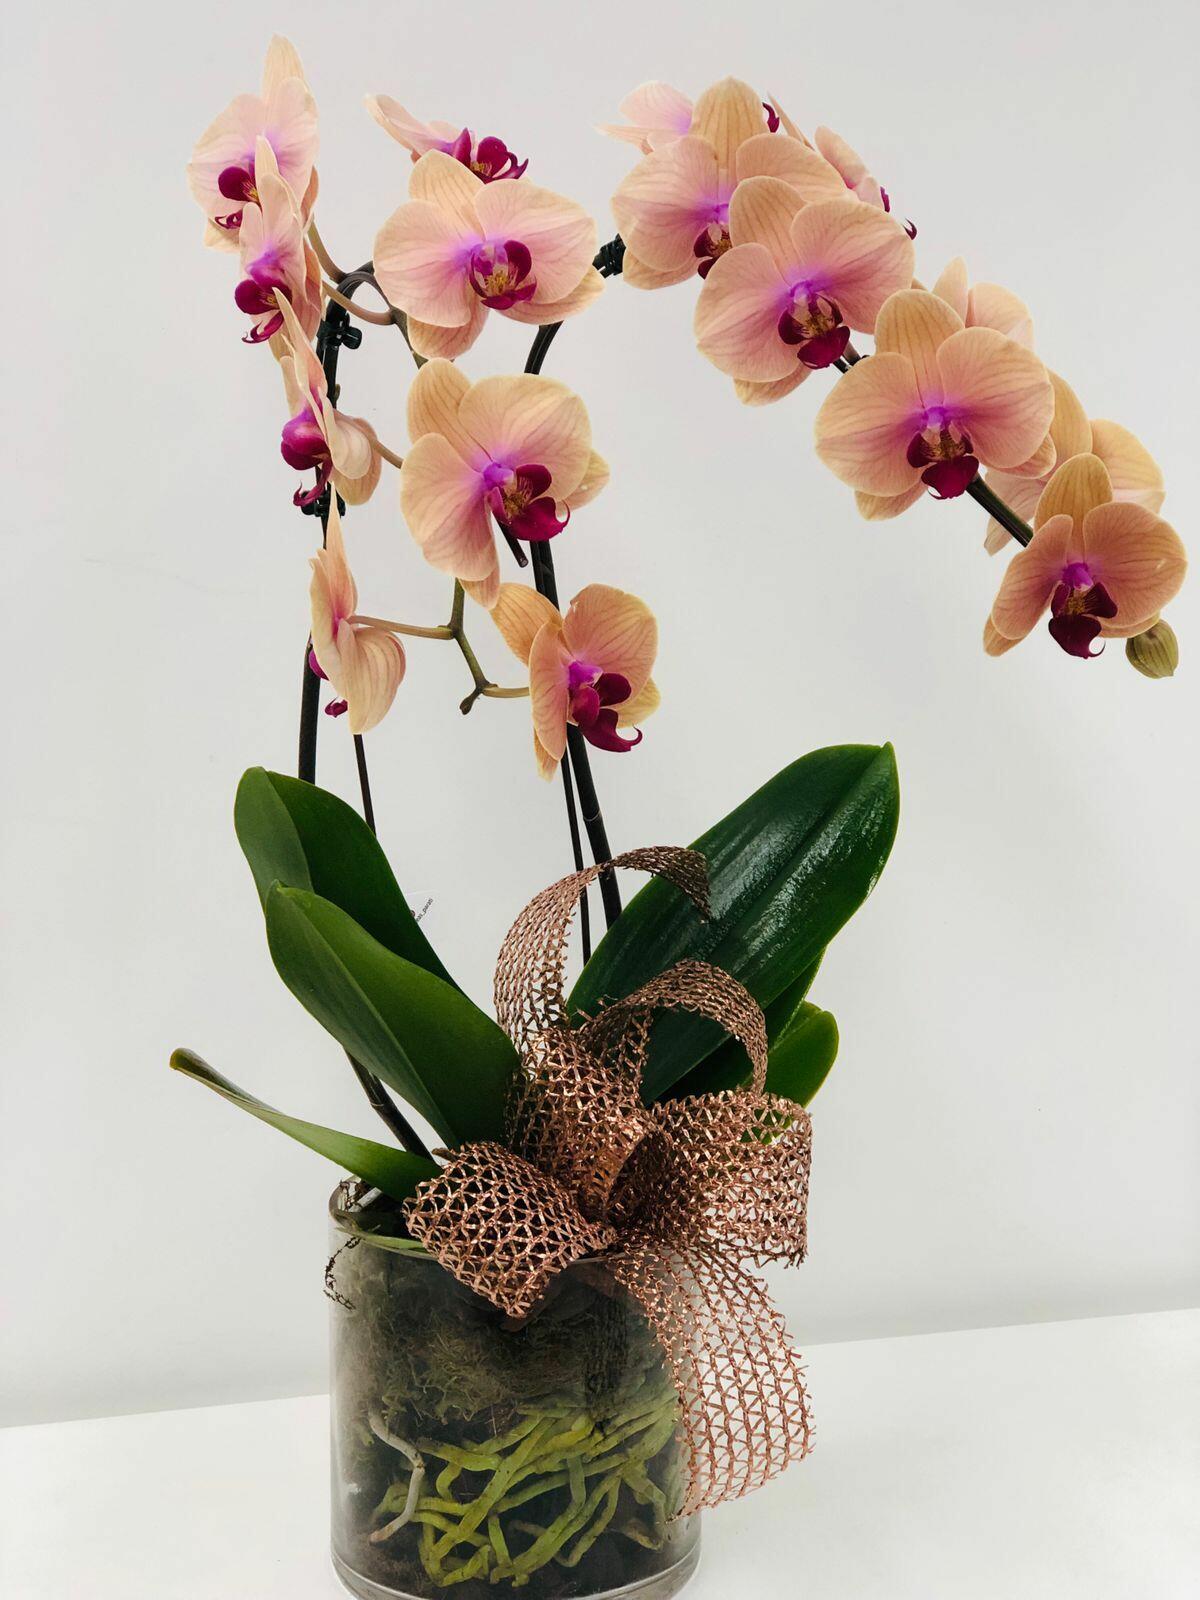 Comprar Orquídea Cascata Phaleanopolis - R$320,00 - Flor De Laranjeira